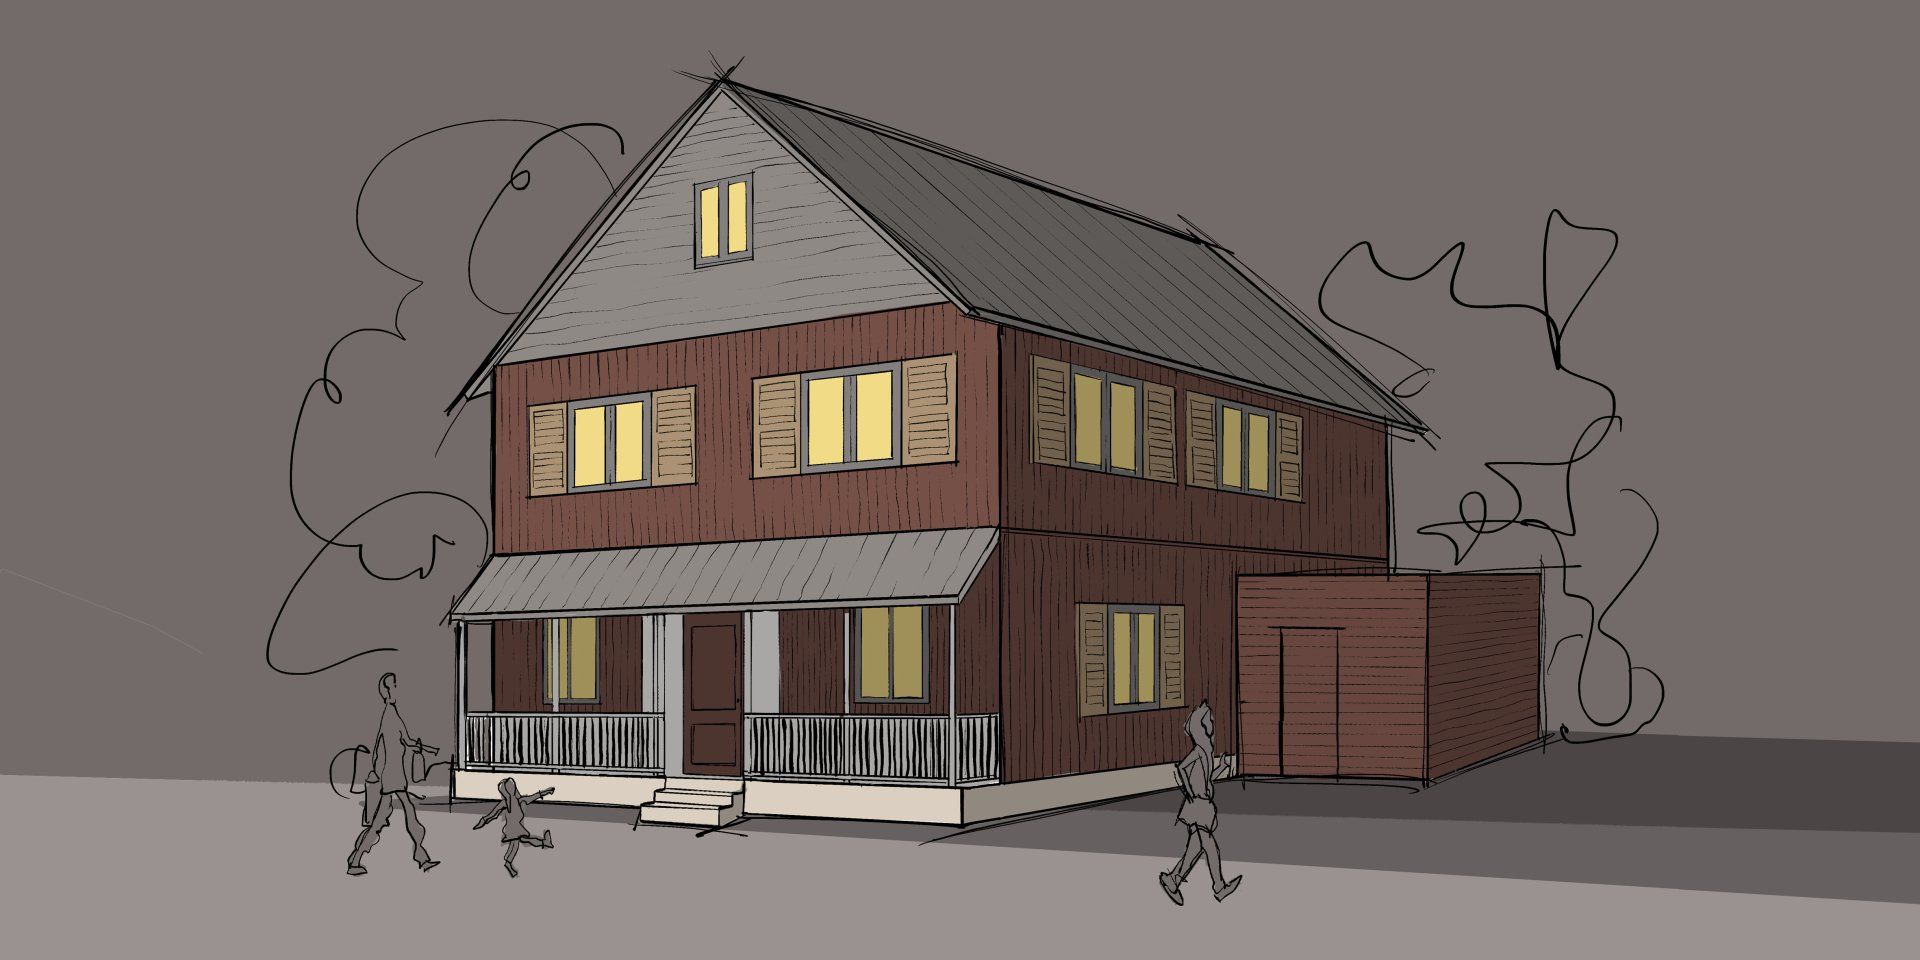 Grübbel Architektur. Atelier. - Beispiel eines Einfamilienhauses in Holzrahmenbausweise - Ansicht 1